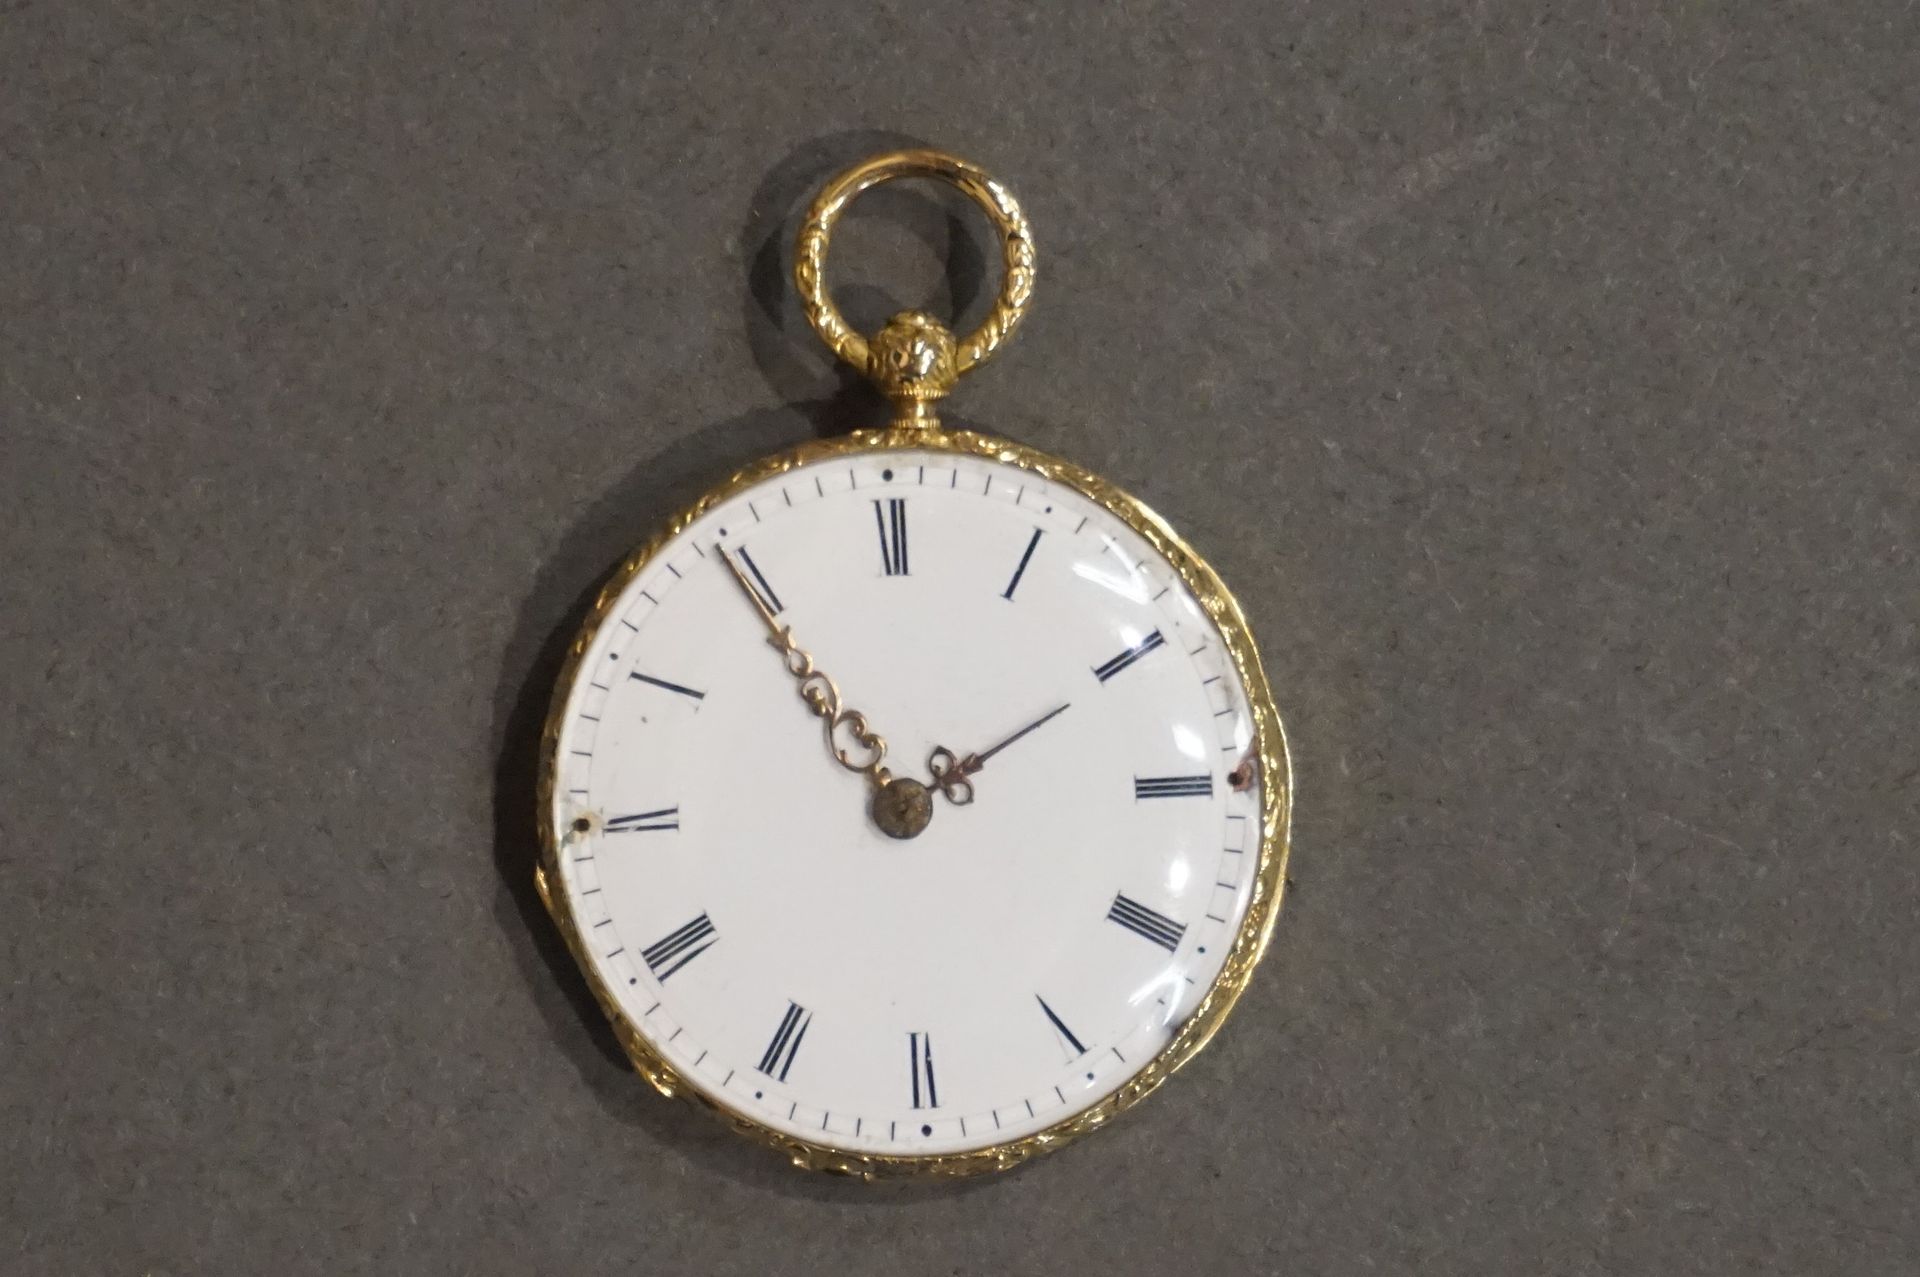 Montre de col Reloj con cuello guilloché de oro (Peso bruto: 21 grs)